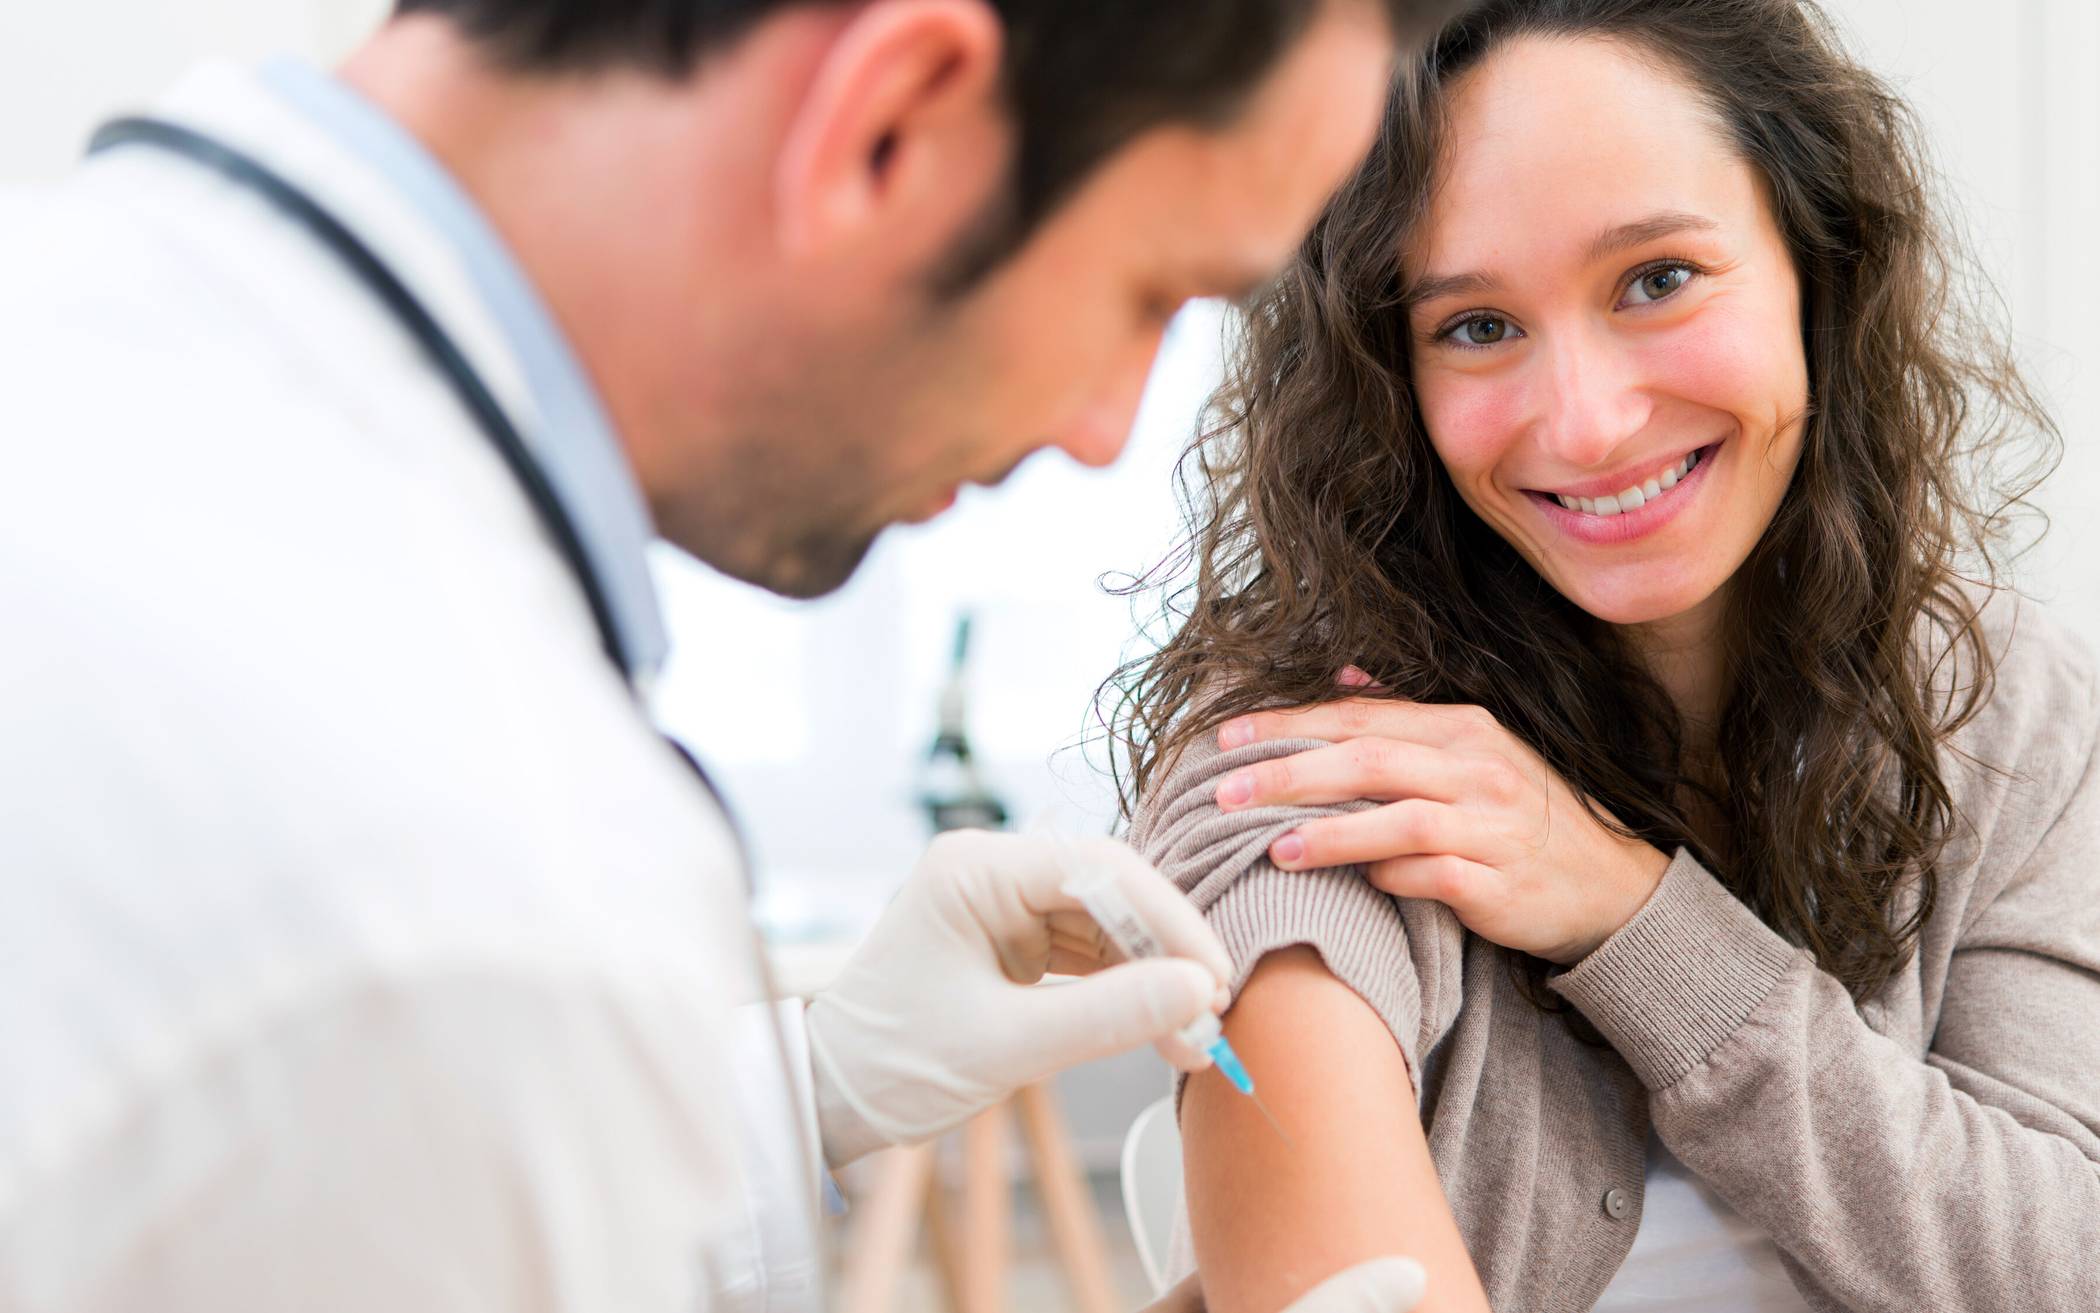 Dezentrale Impfstelle in Monheim eröffnet